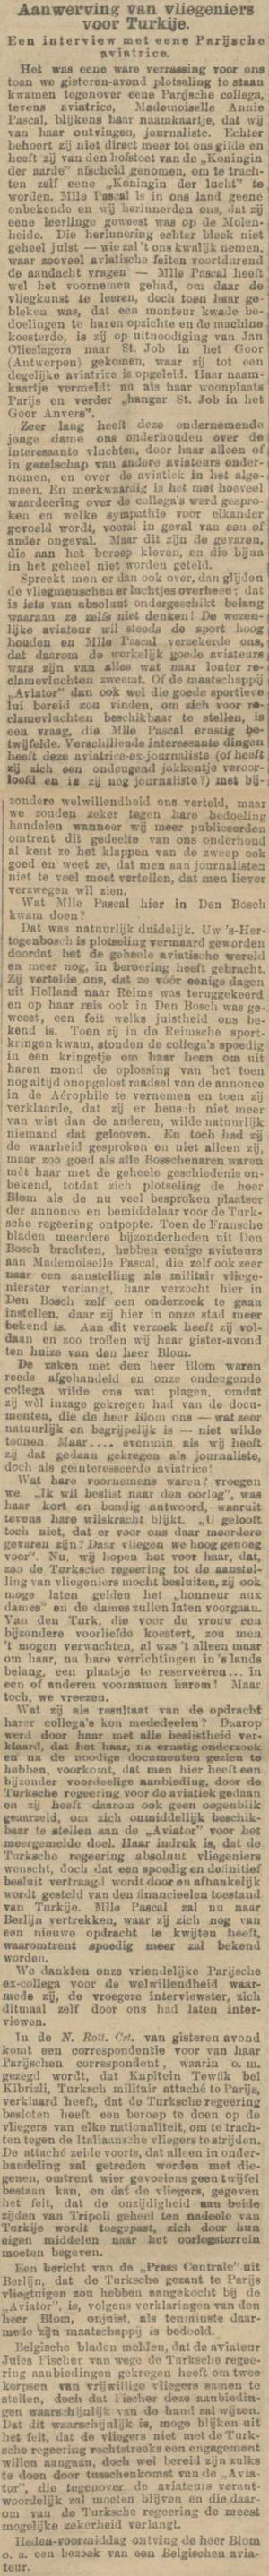 Provinciale Noordbrabantsche en 's Hertogenbossche courant, 13 december 1911